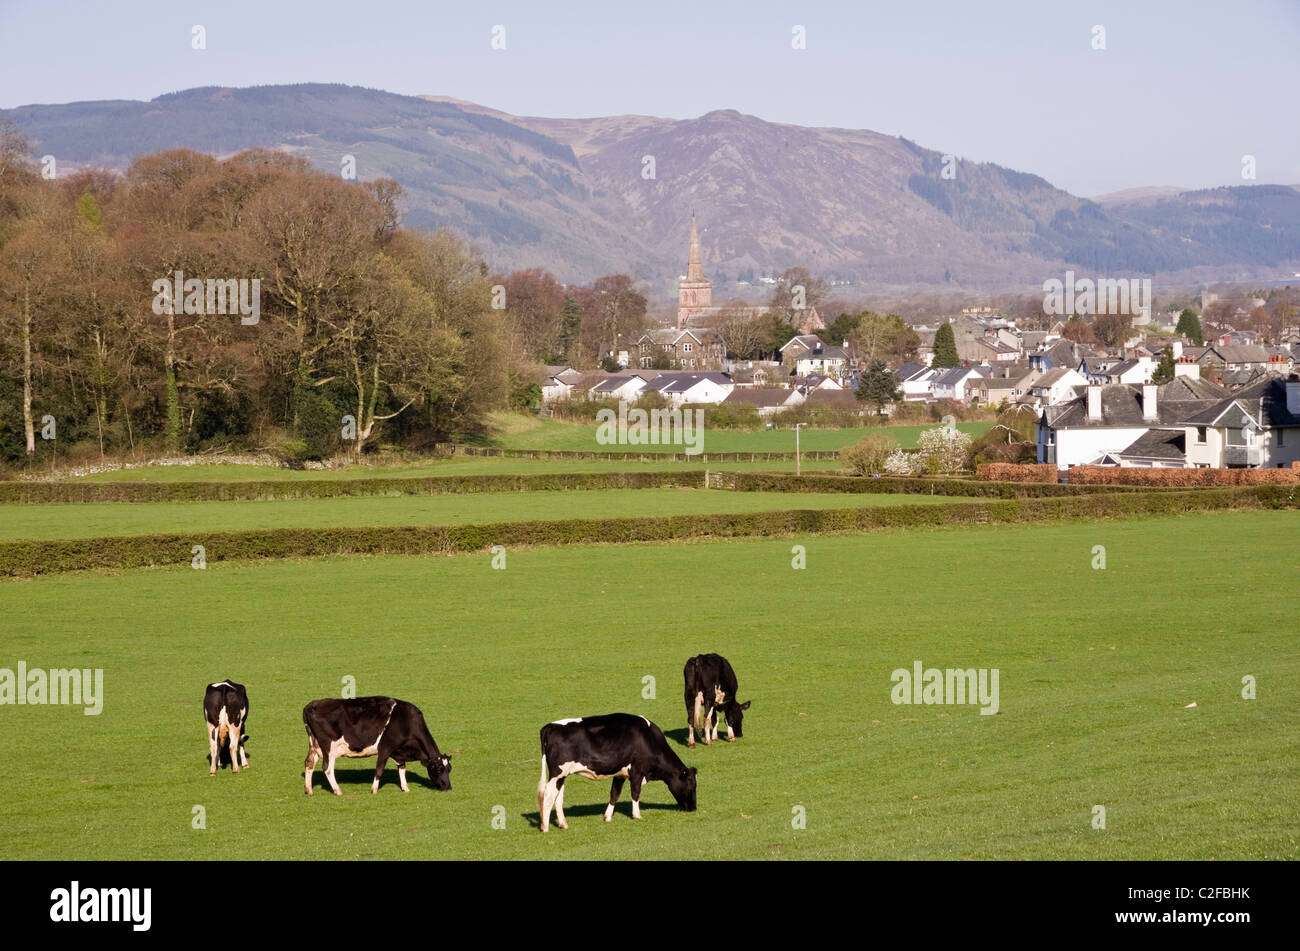 Paese pastorale scena con Holstein il frisone allevamento di vacche da latte al pascolo del bestiame in un campo nella periferia della città. Keswick, Cumbria, Inghilterra, Regno Unito. Foto Stock